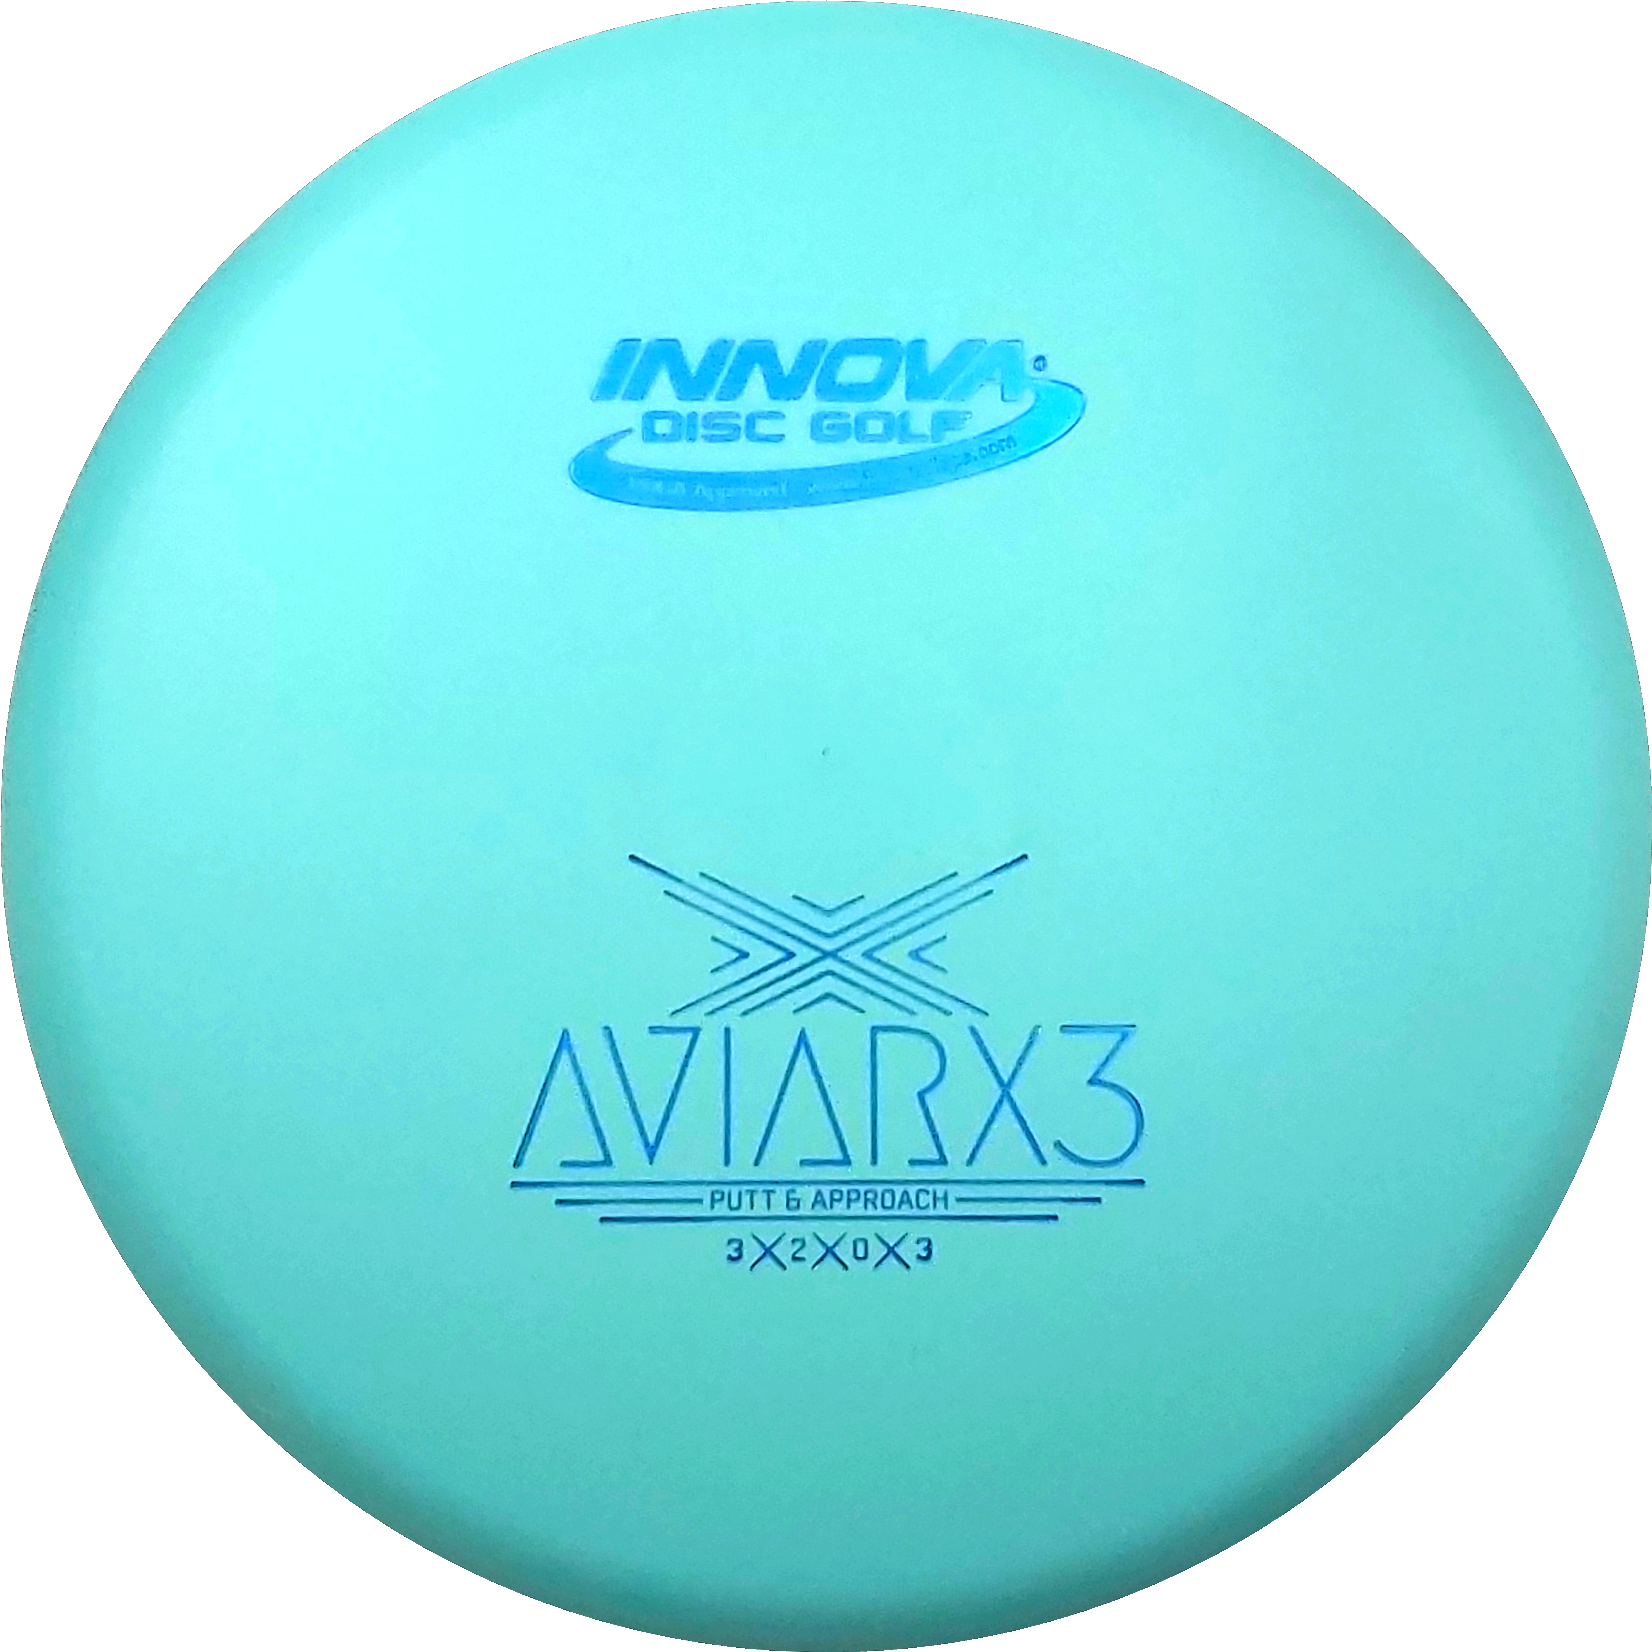 Innova DX AviarX3